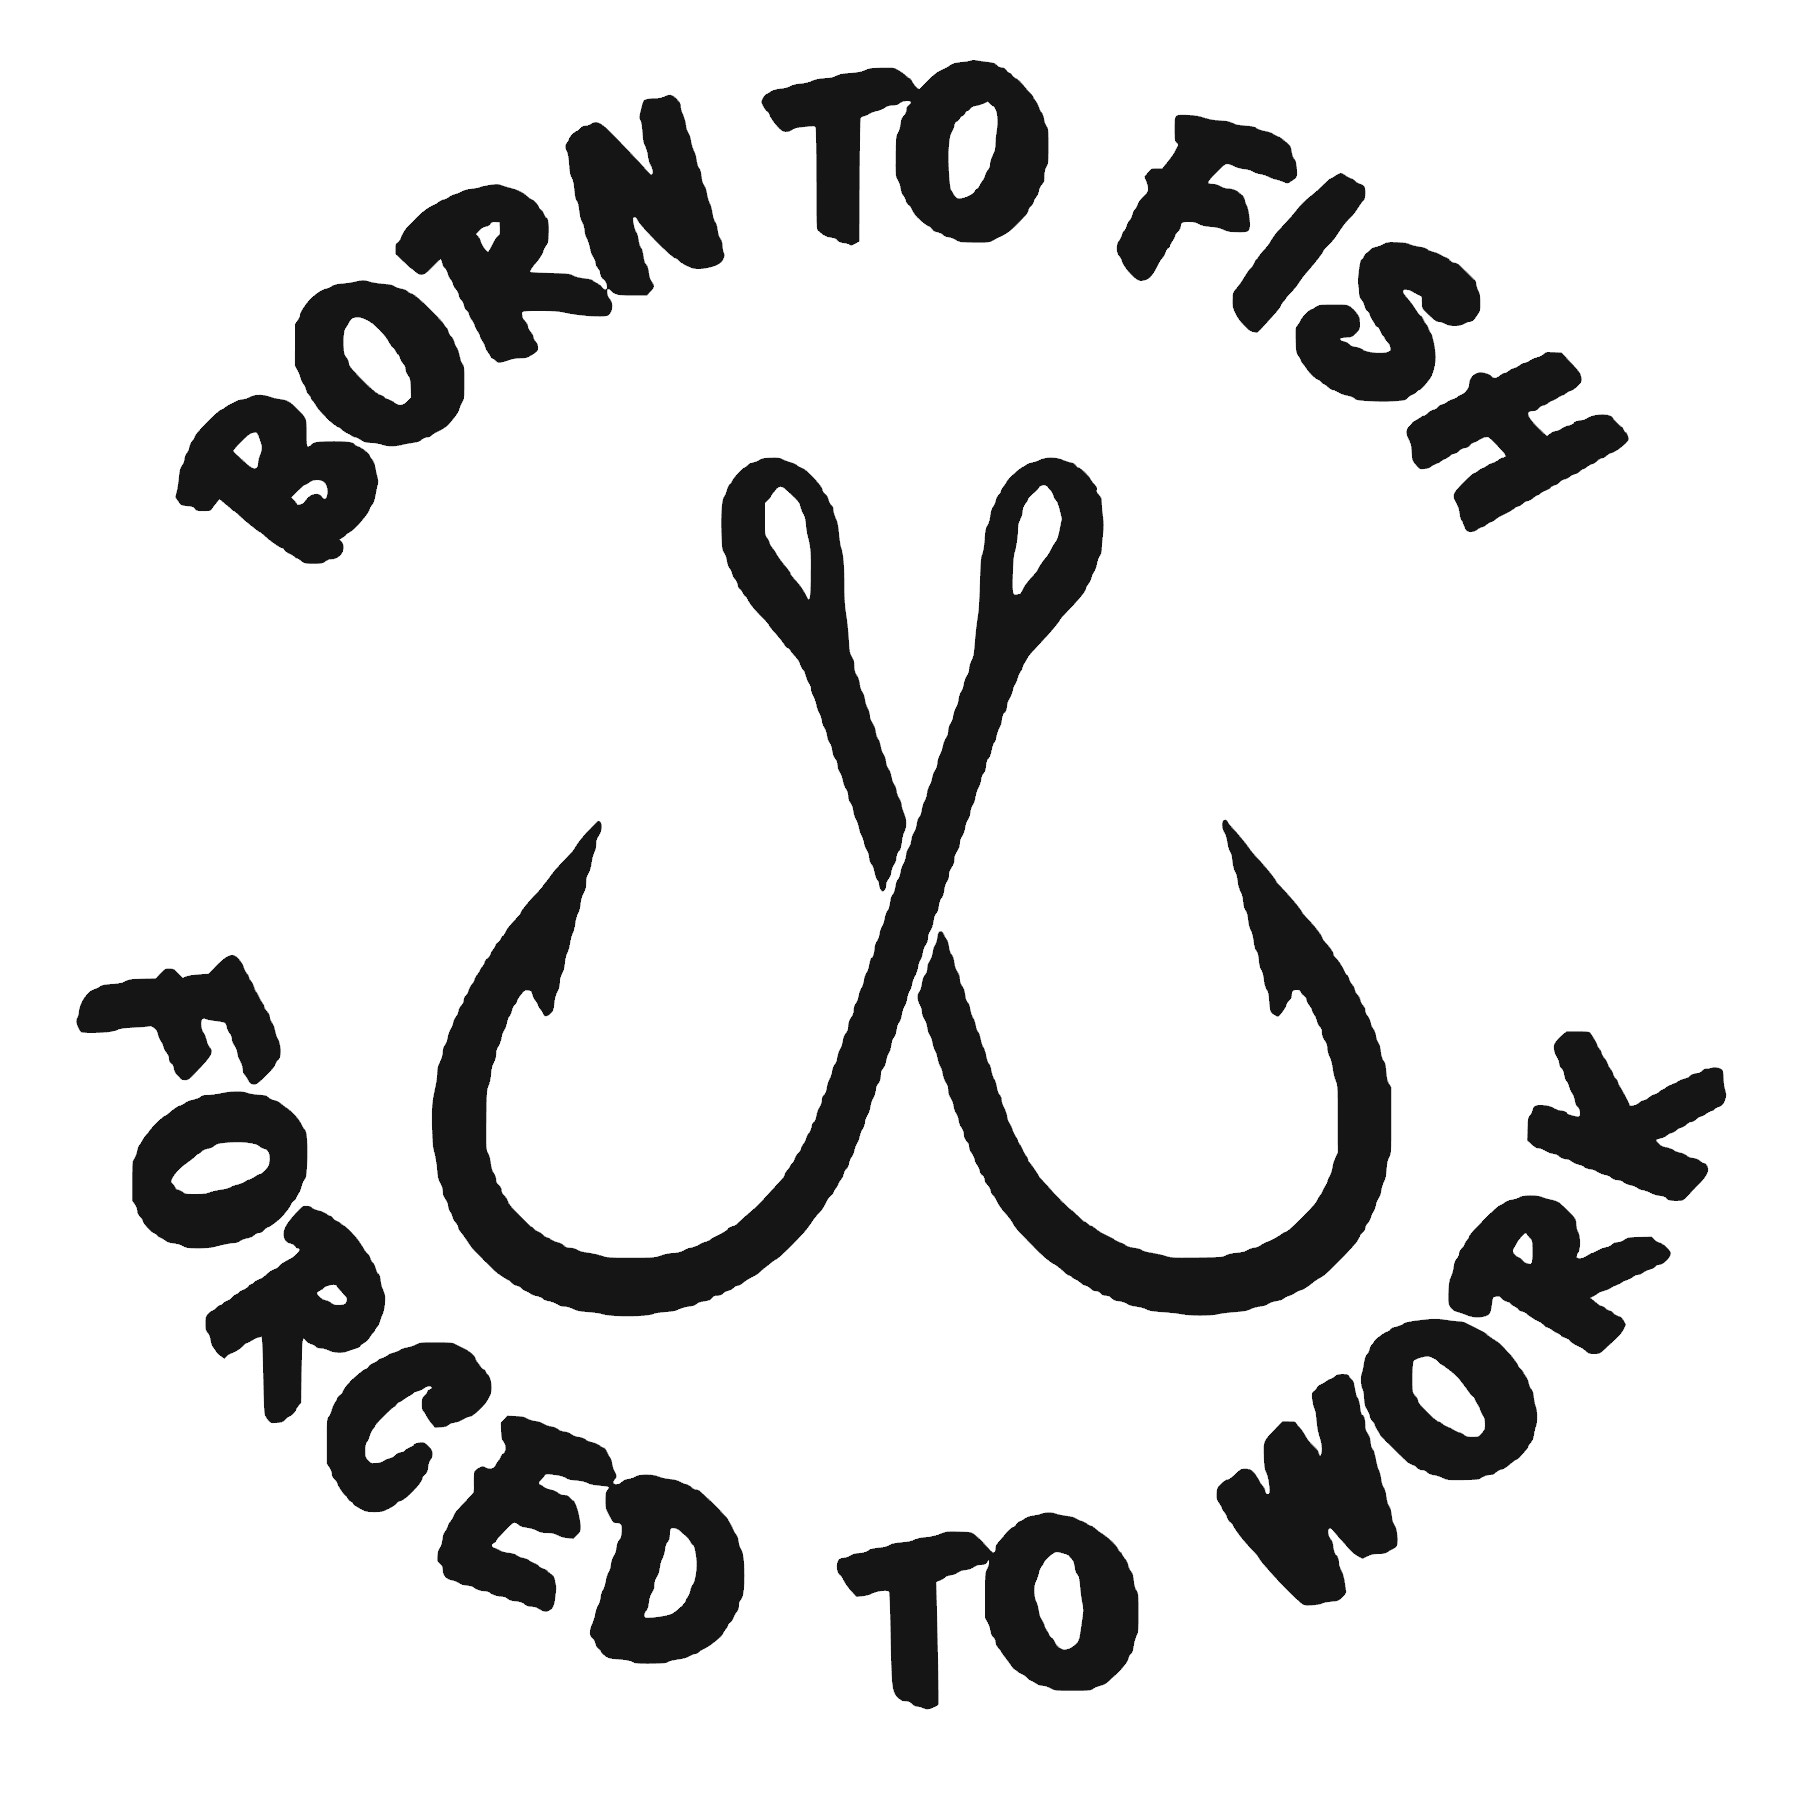 Born Fishing